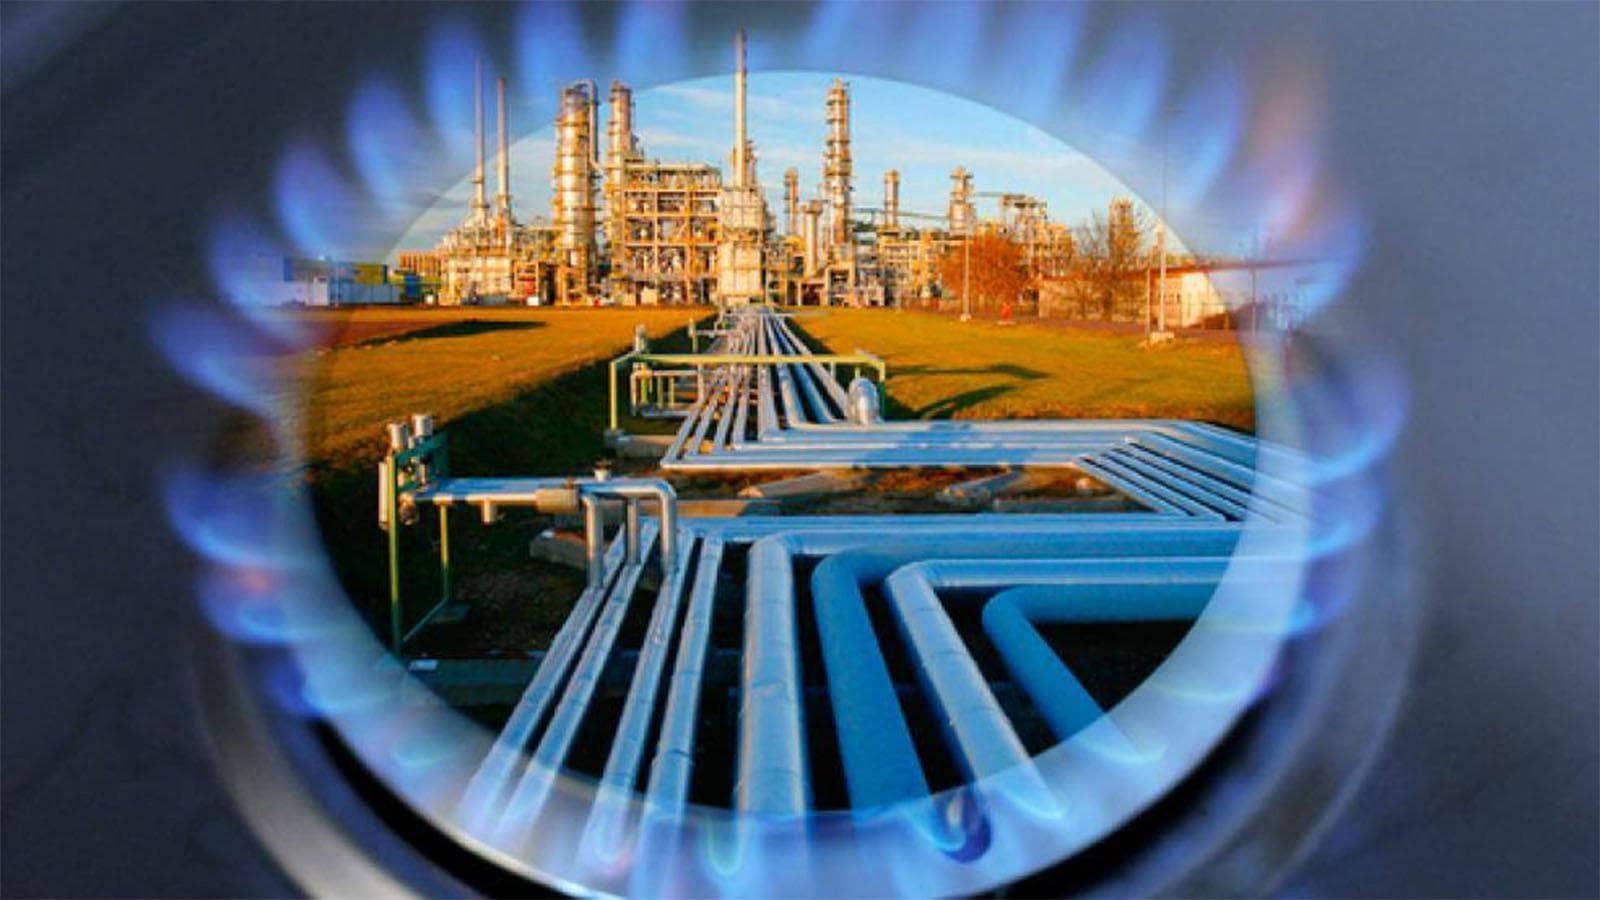 фотографии связанные с газовой промышленностью